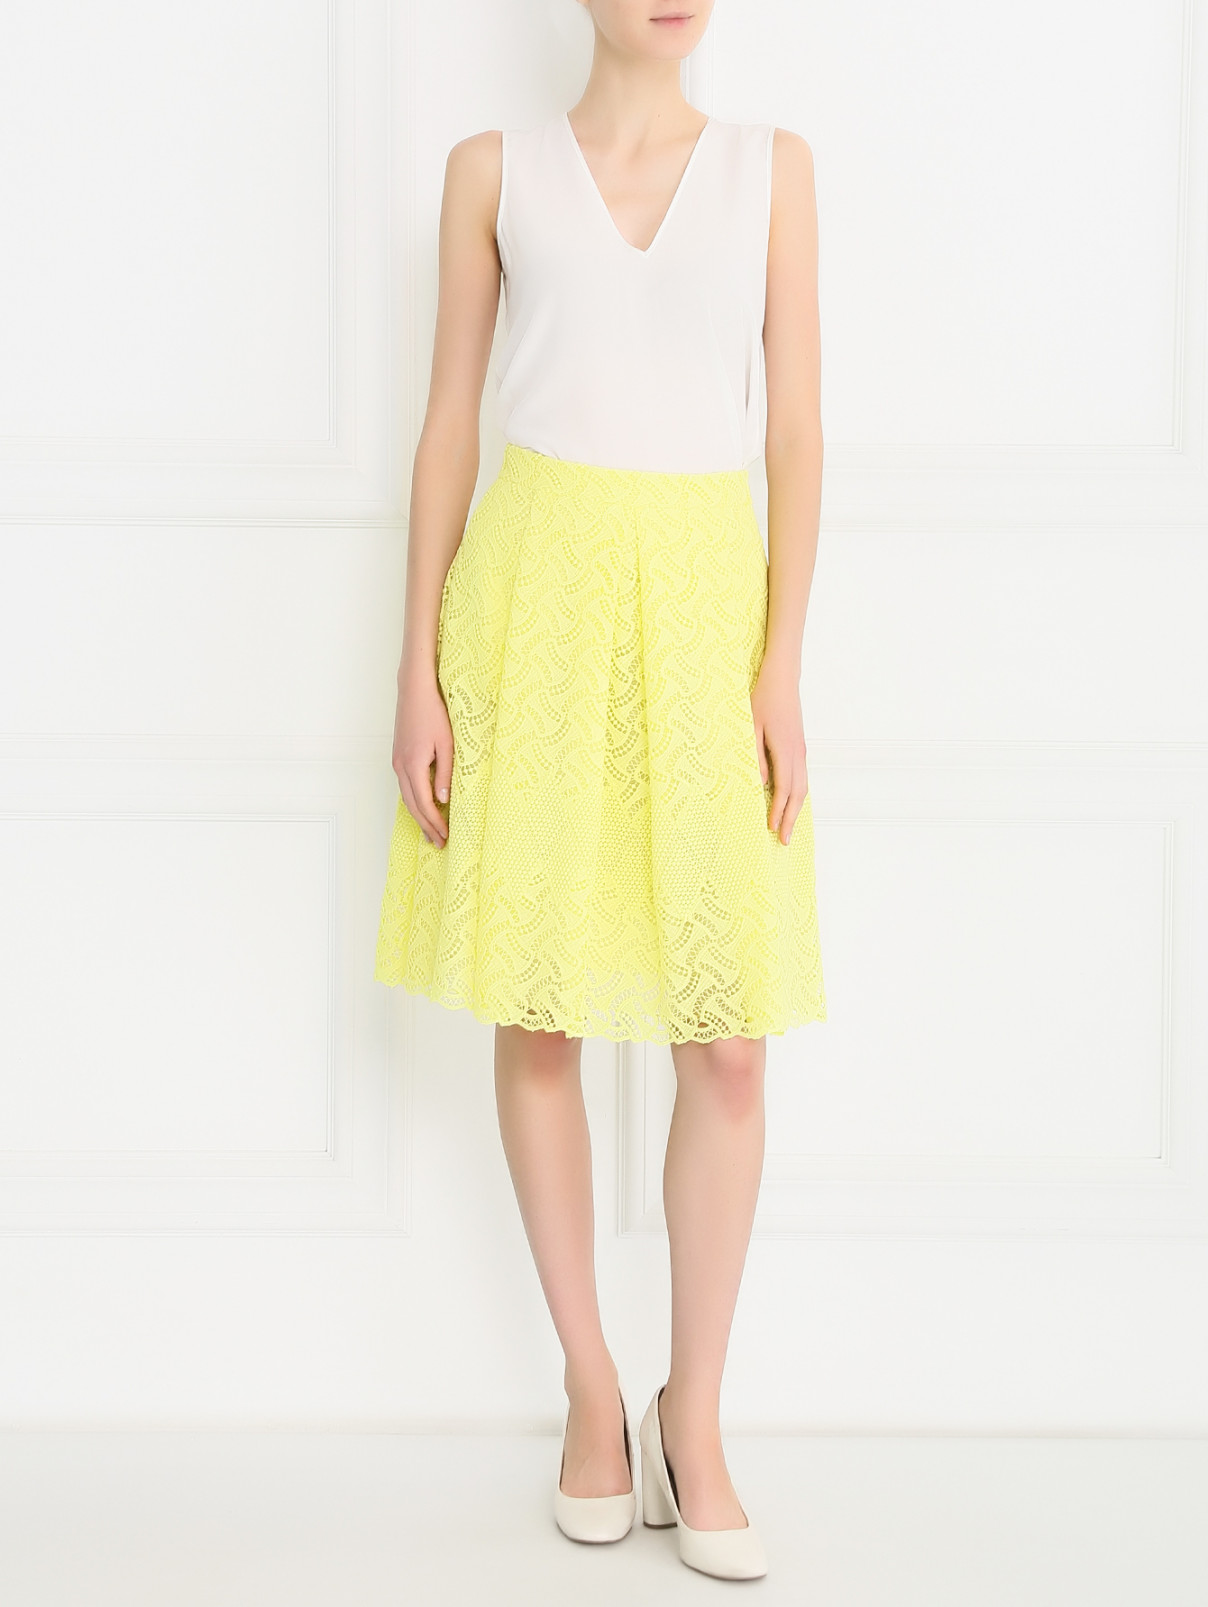 Кружевная юбка-трапеция Ermanno Scervino  –  Модель Общий вид  – Цвет:  Желтый